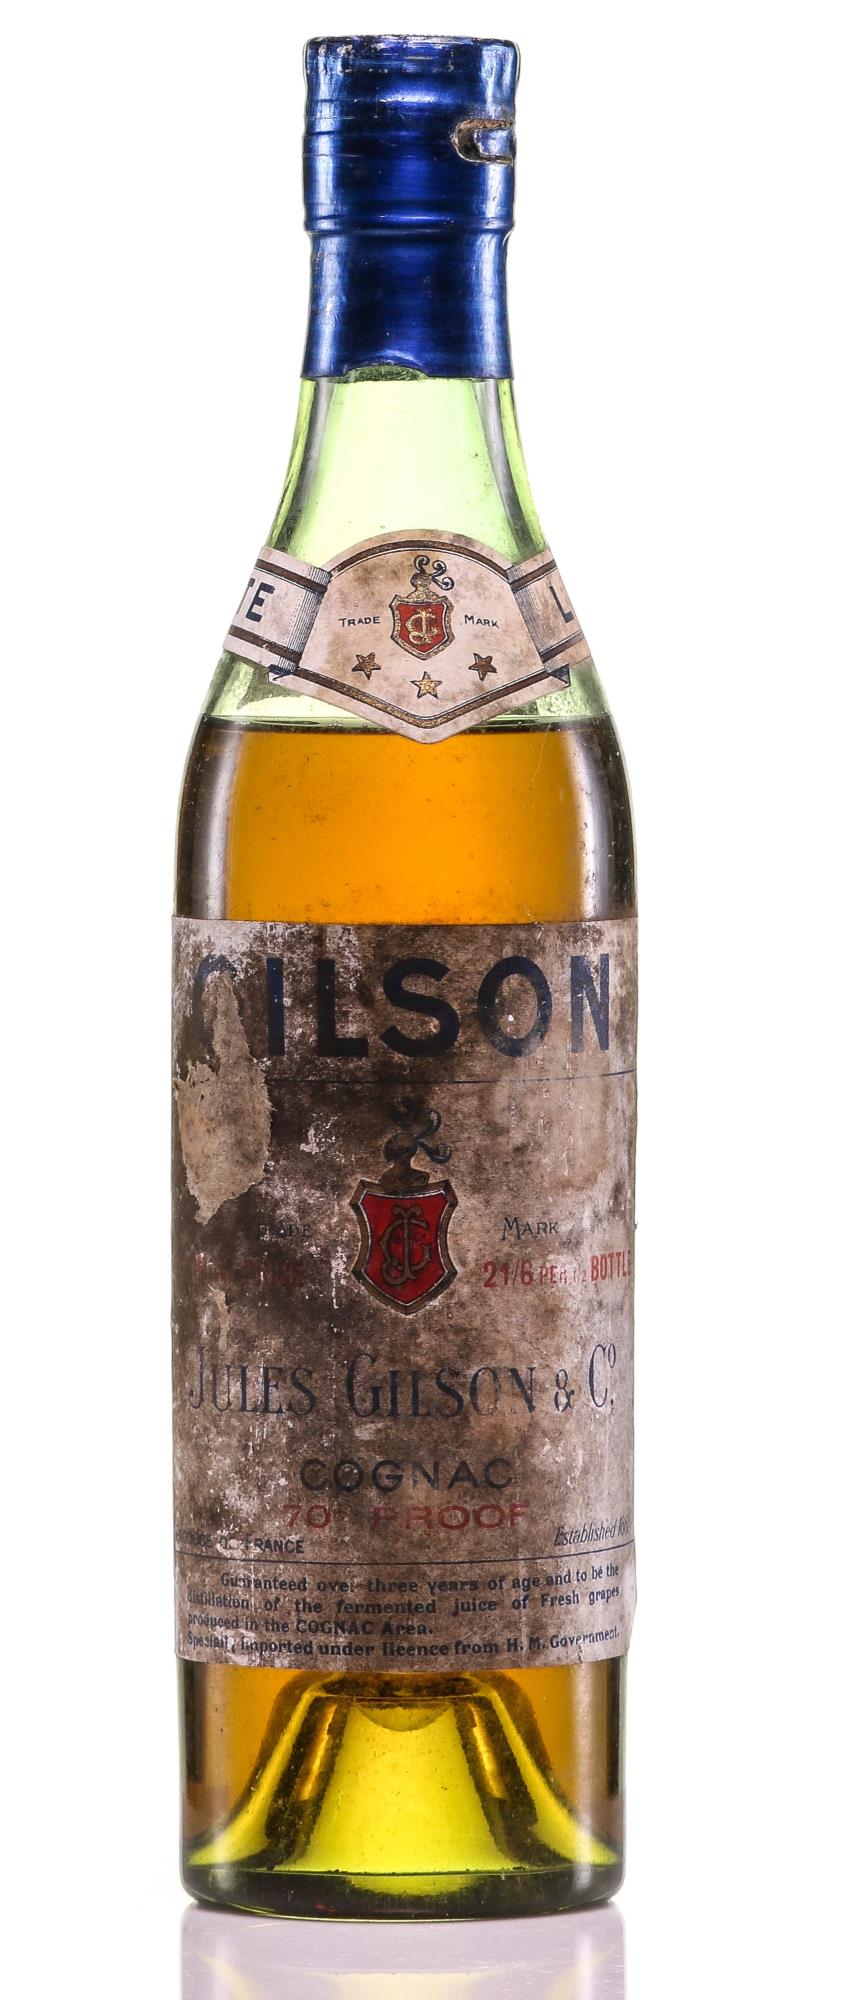 1940 Jules Gilson & Co Cognac - Half Bottle - Rue Pinard